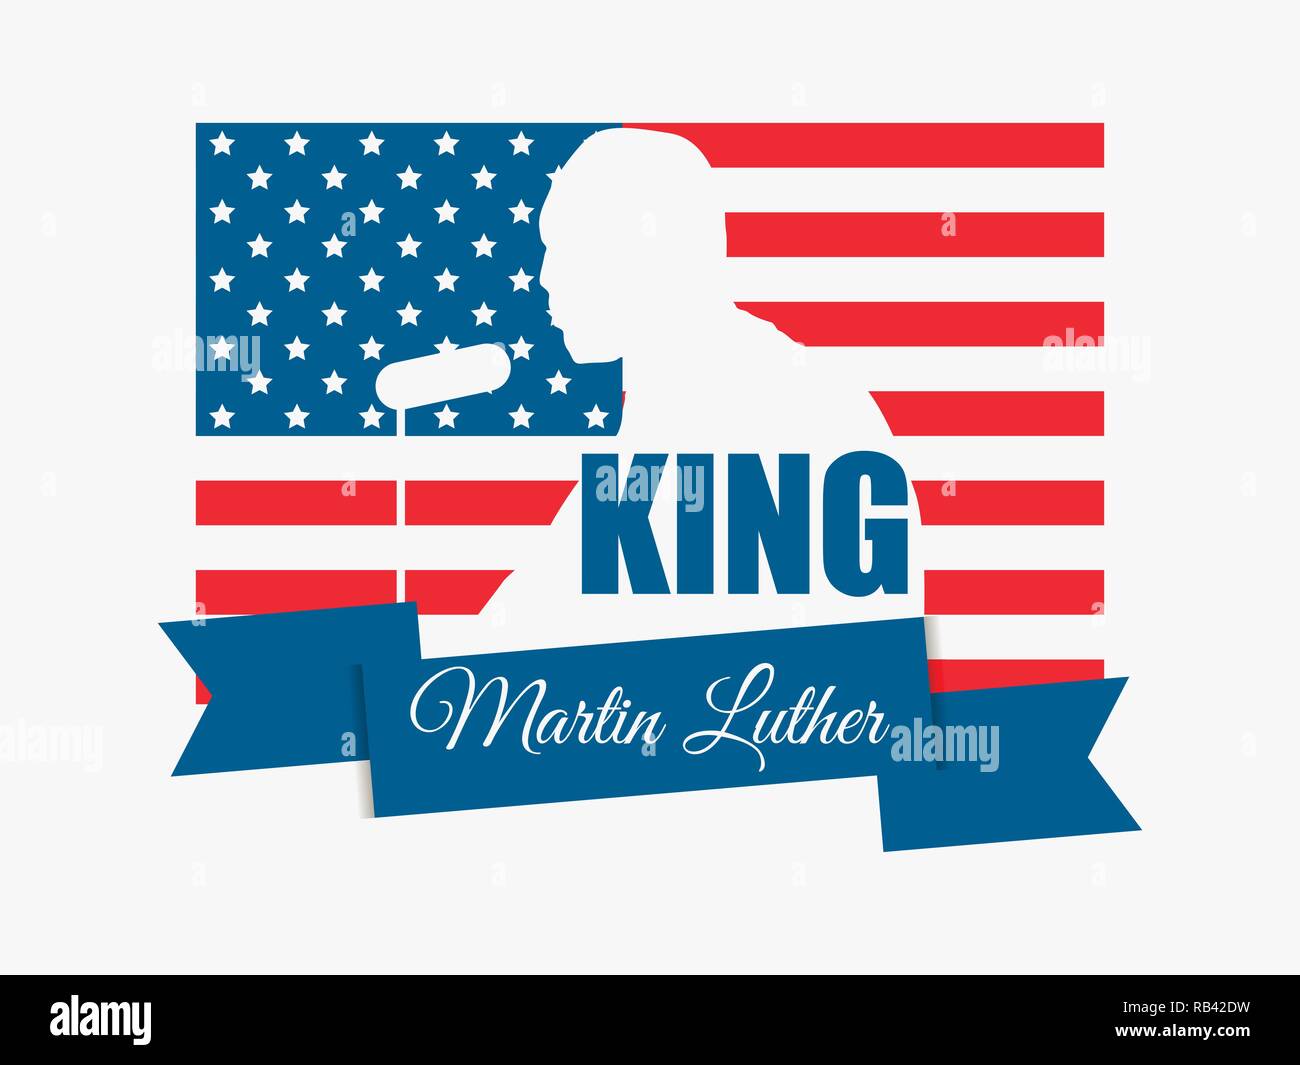 Martin Luther King Day. J'ai fait un rêve. Martin Luther King Day. Carte de souhaits avec le drapeau américain. Vector illustration Illustration de Vecteur